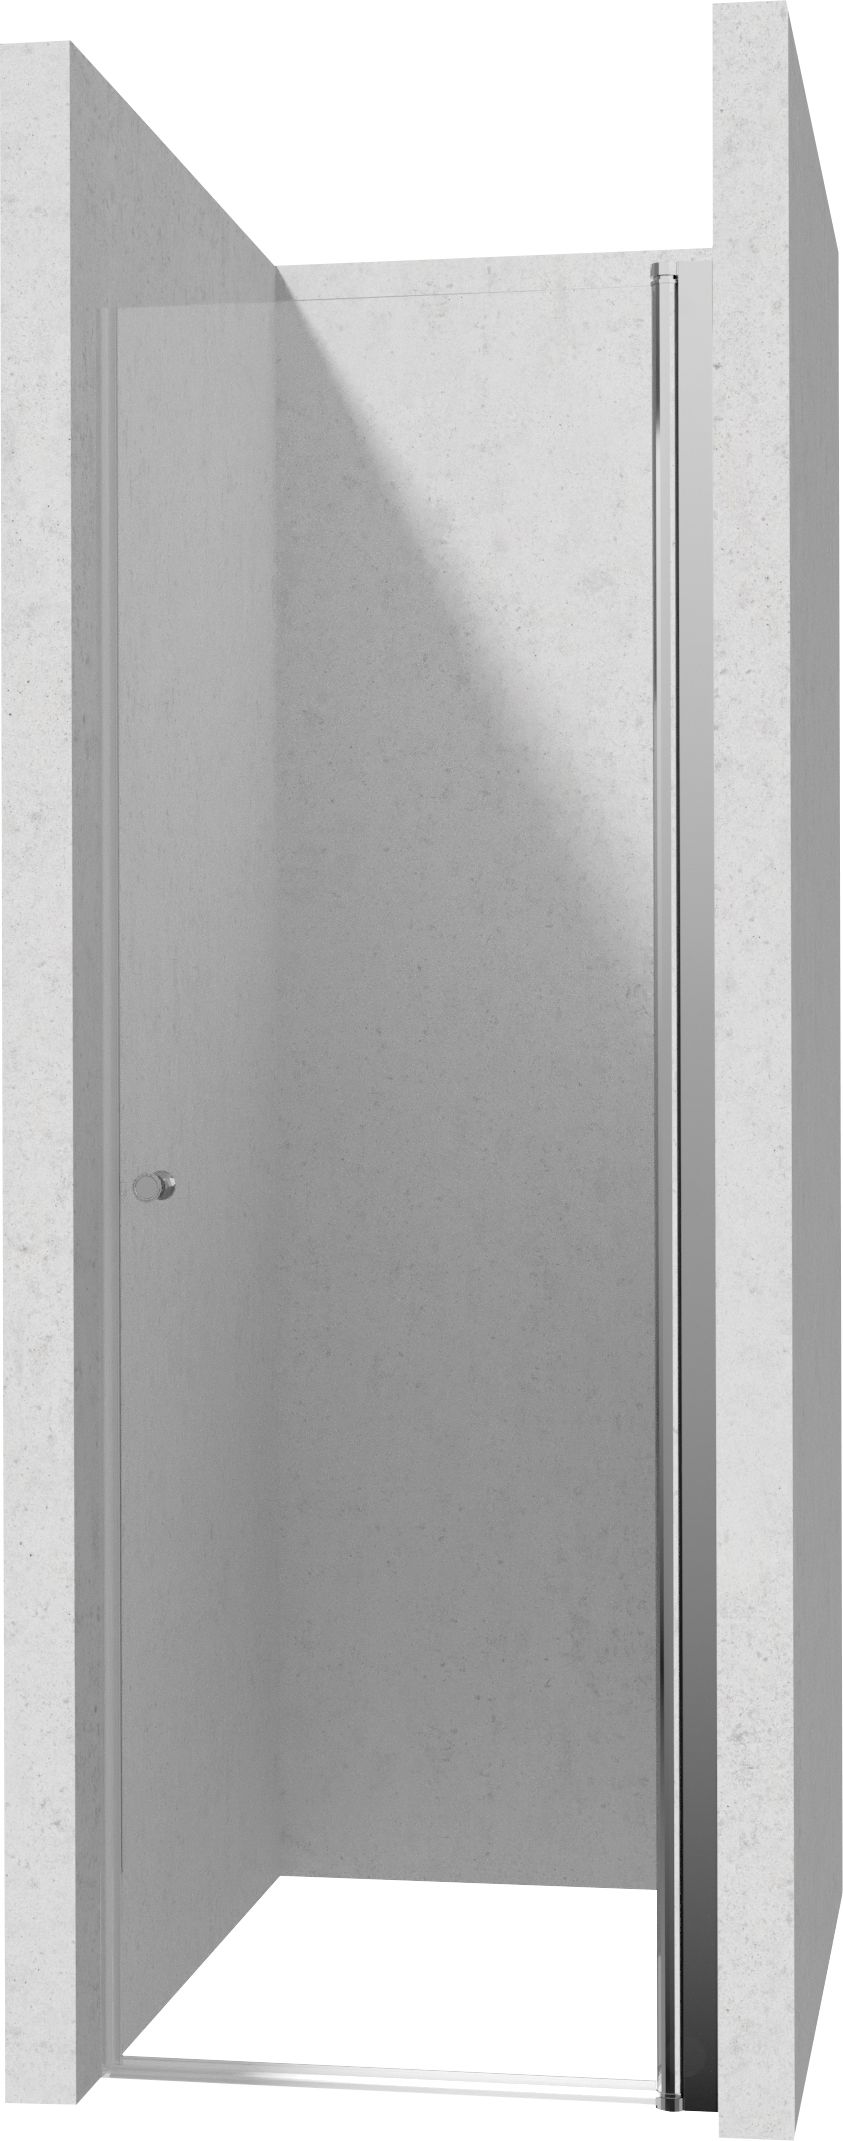 Drzwi prysznicowe 70 cm - wahadłowe - KTSW047P - Główne zdjęcie produktowe